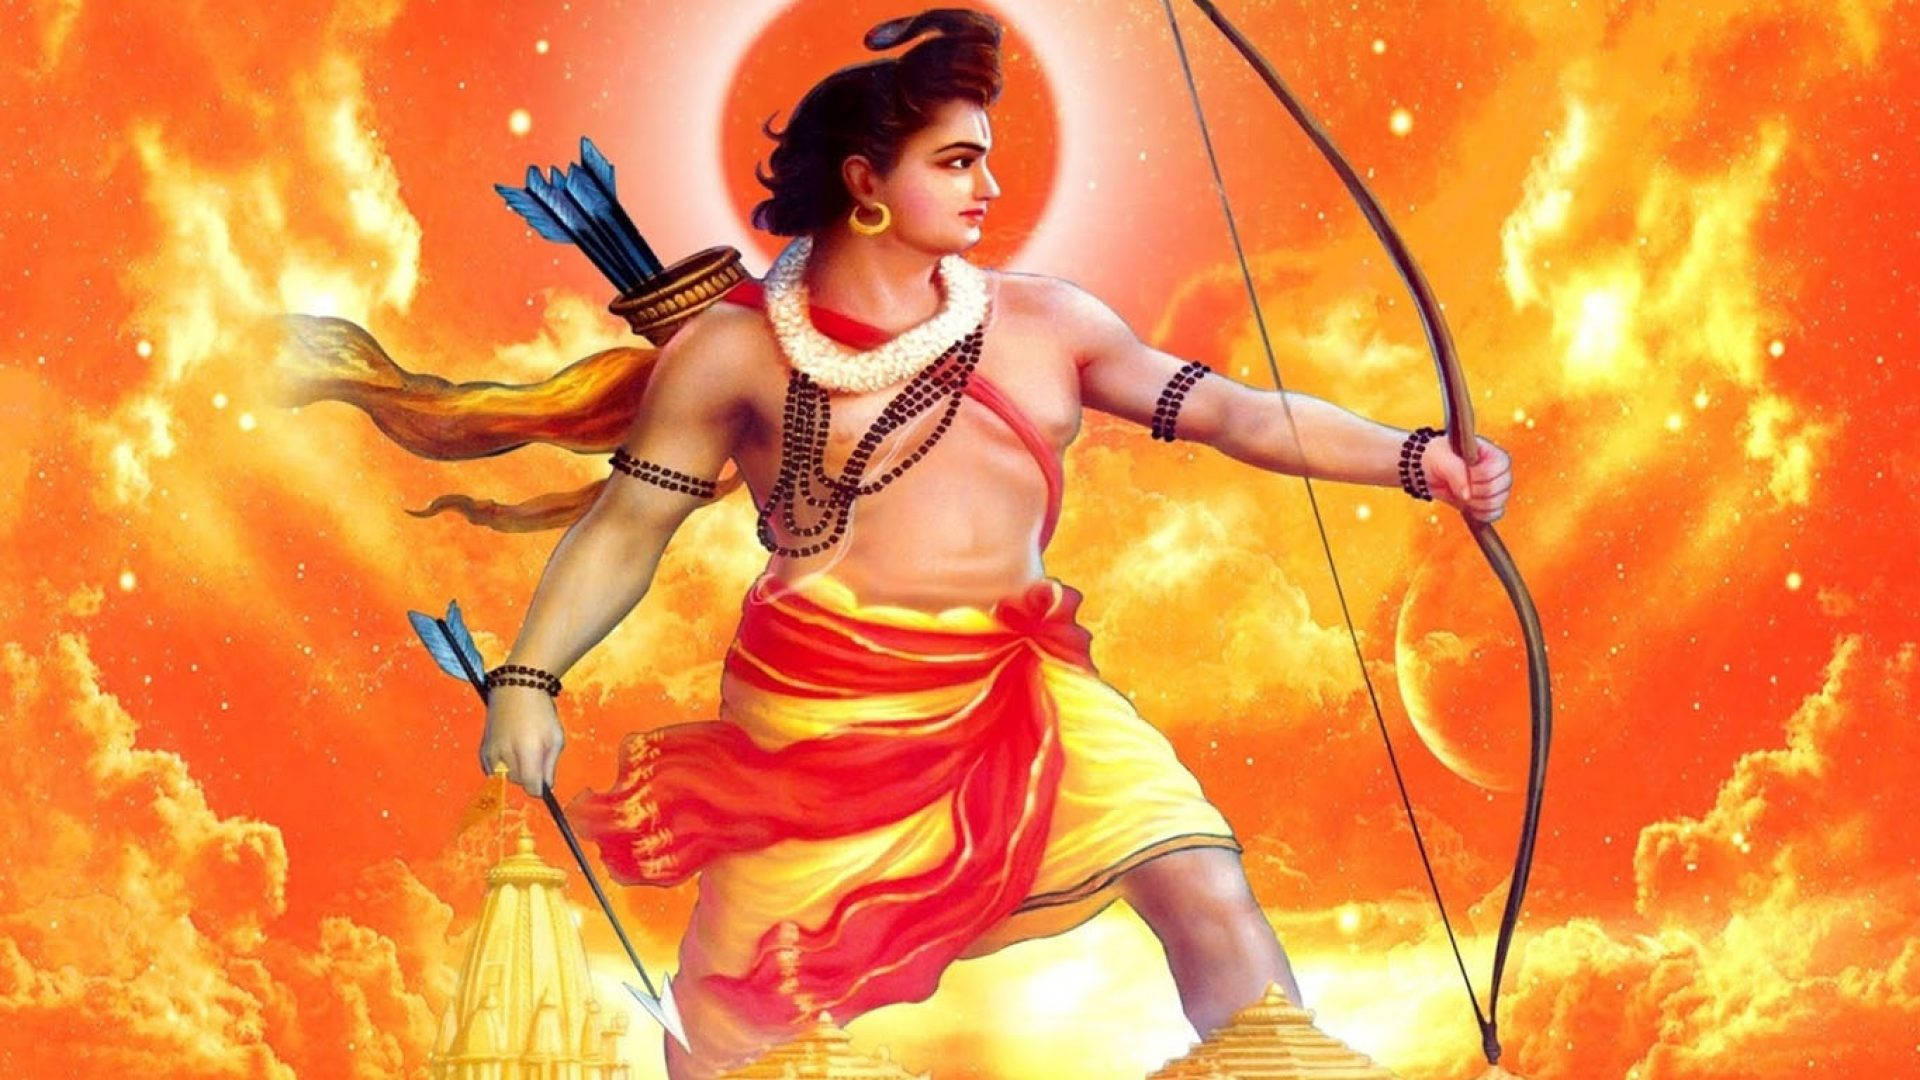 Ram Ji With Fiery Orange Background Background